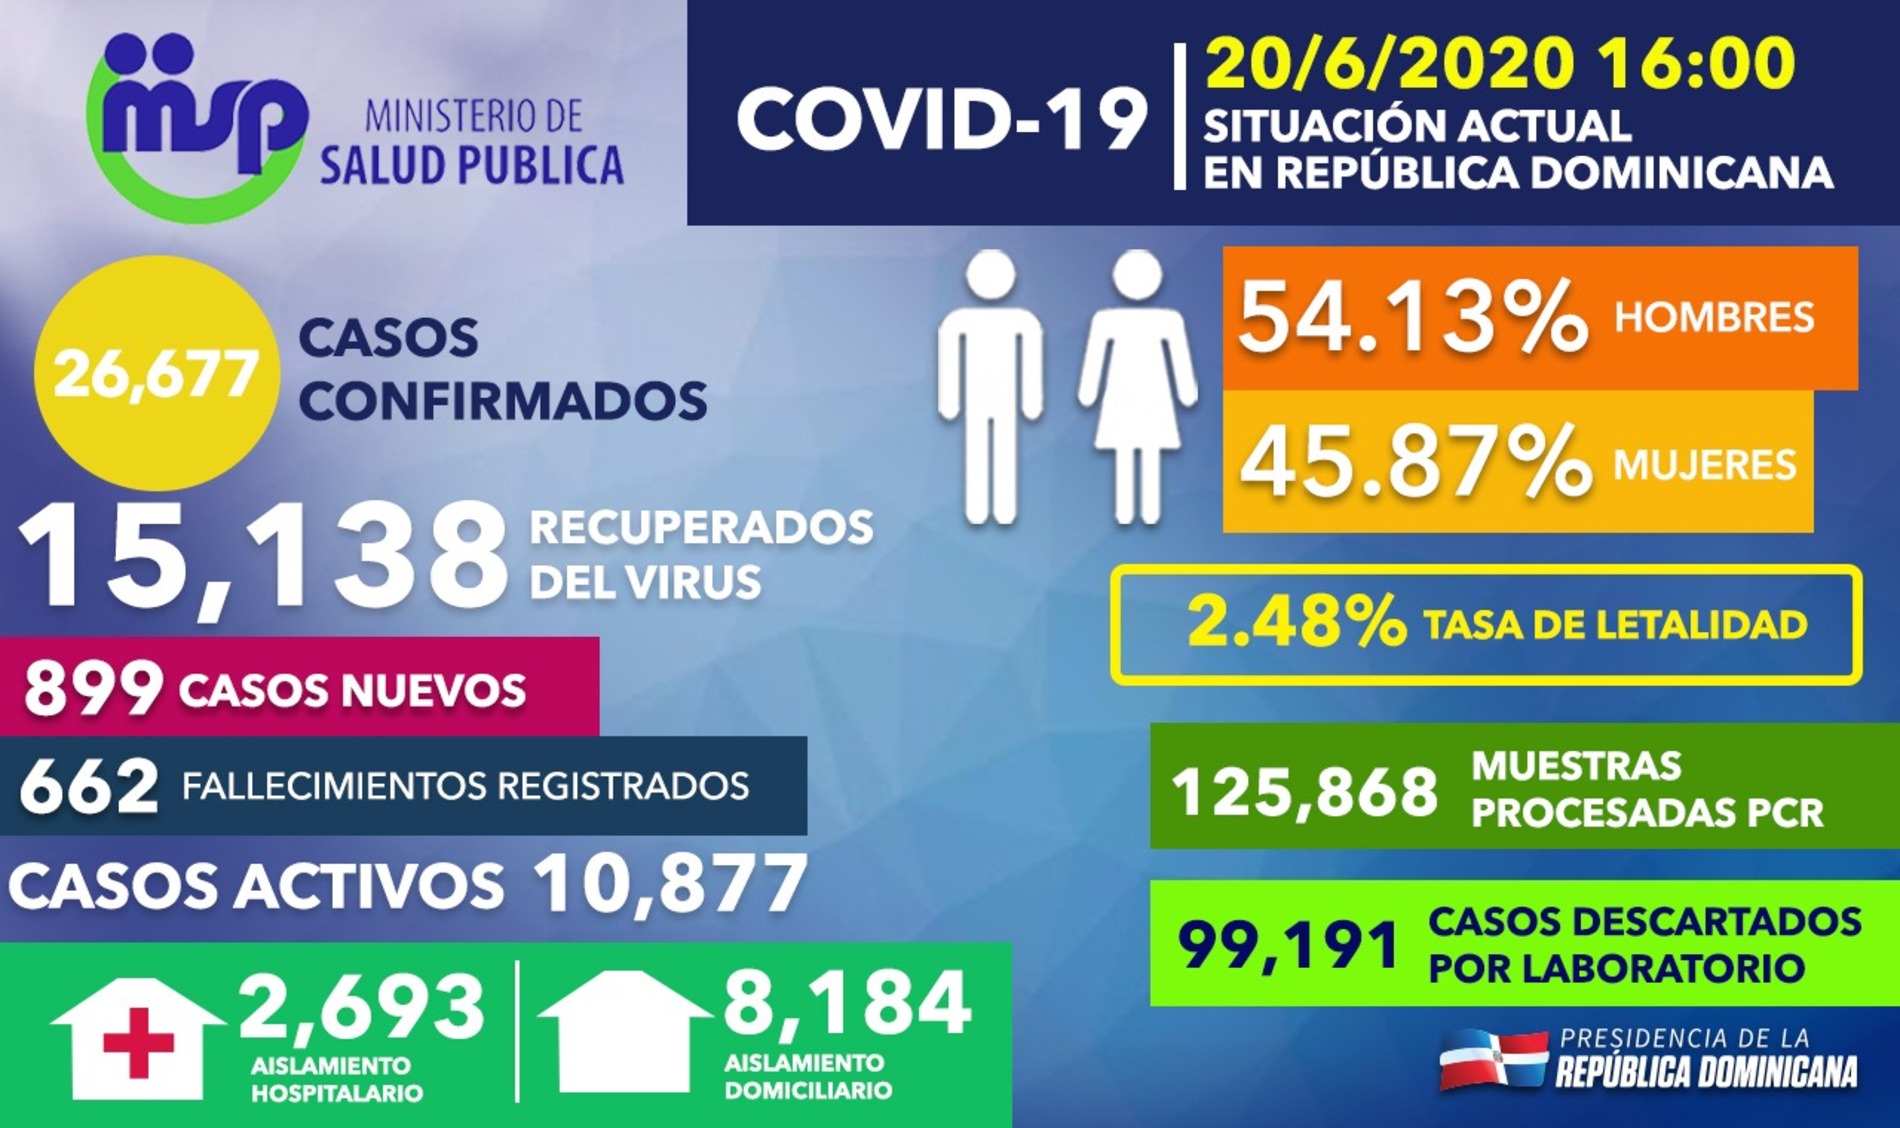 REPÚBLICA DOMINICANA: República Dominicana registra 899 casos nuevos de COVID-19; 15,138 recuperados y casi 100 mil descartados